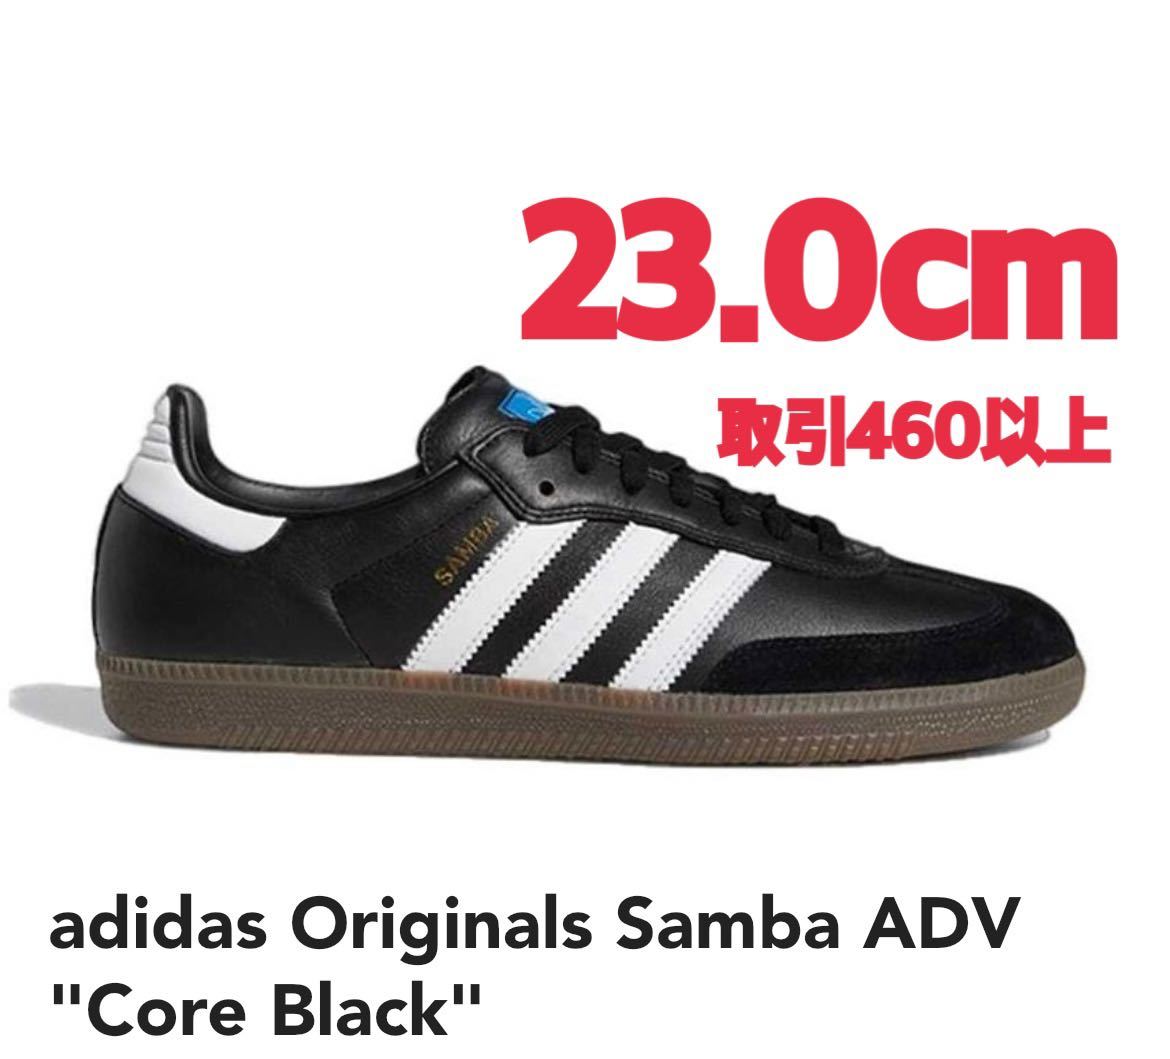 adidas Originals Samba ADV Core Black 23.0cm アディダス オリジナルス サンバ ADV コアブラック ブラック US5 23cm